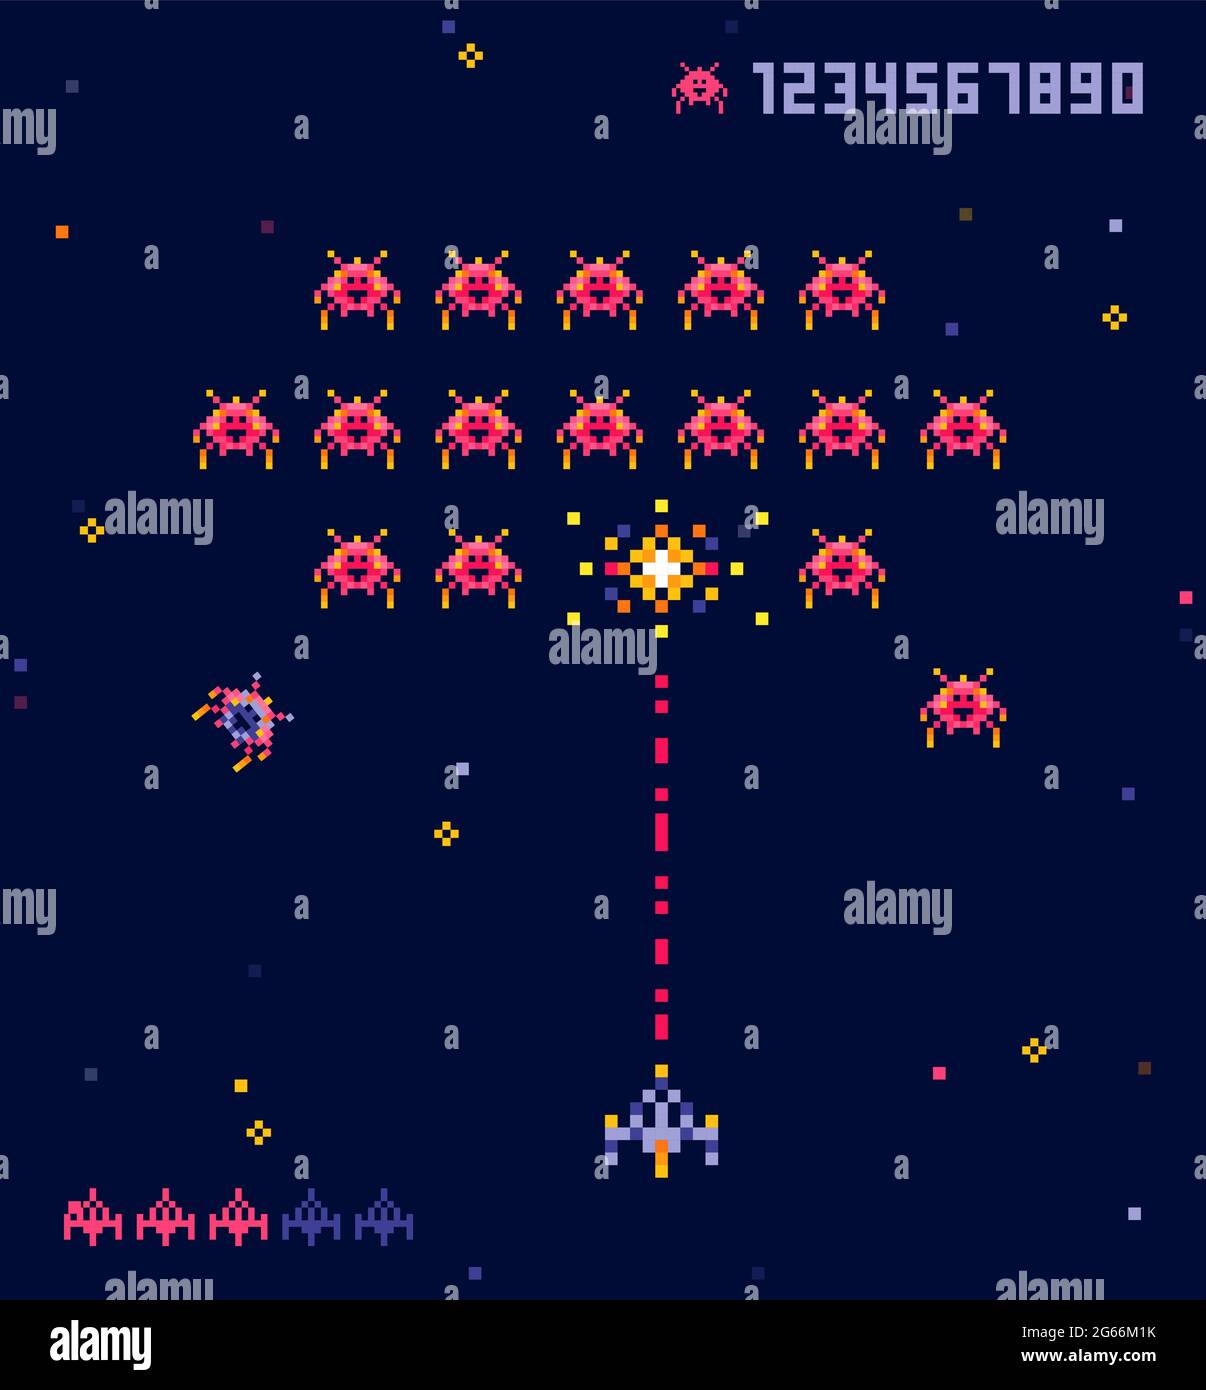 Illustrazione vettoriale di vecchio pixel art stile Ufo spazio guerra gioco. Mostri pixel e astronave. Gioco retrò, concetto di gioco a 8 bit, stile alla moda degli anni '90. Illustrazione Vettoriale